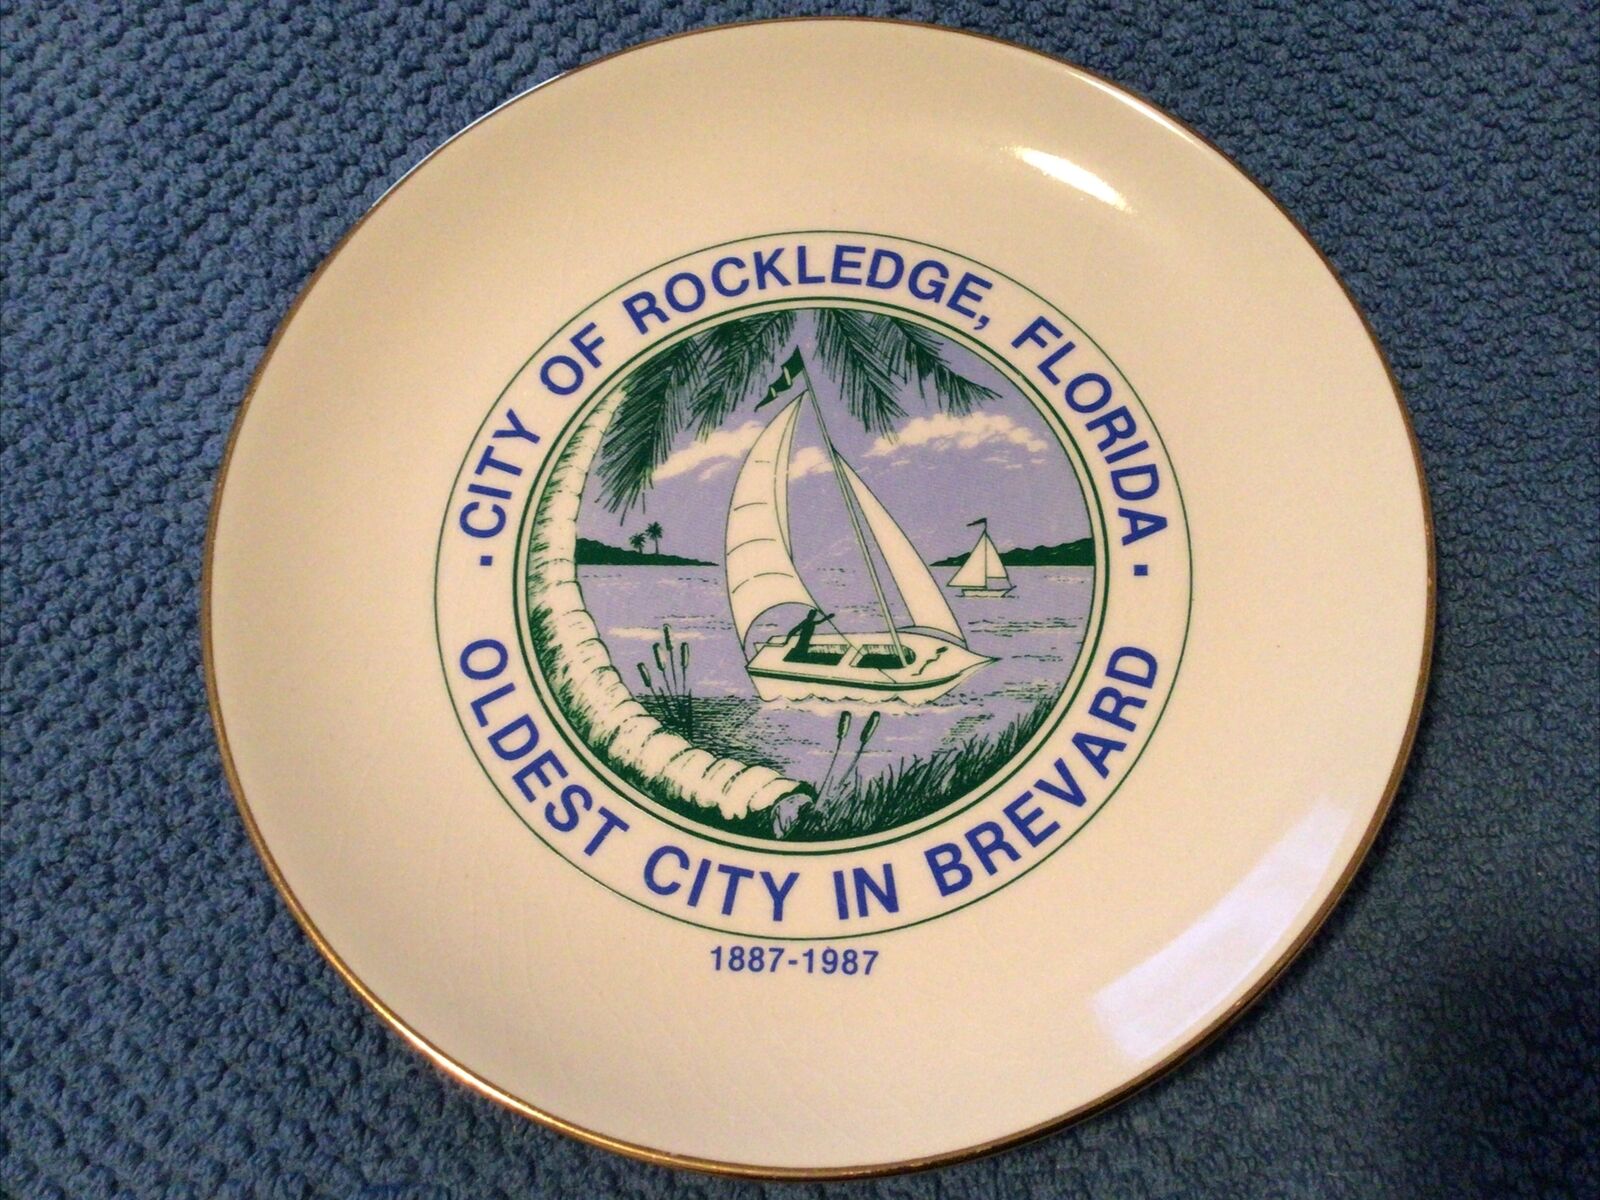 Rockledge Florida 1887-1987 Centennial Plate